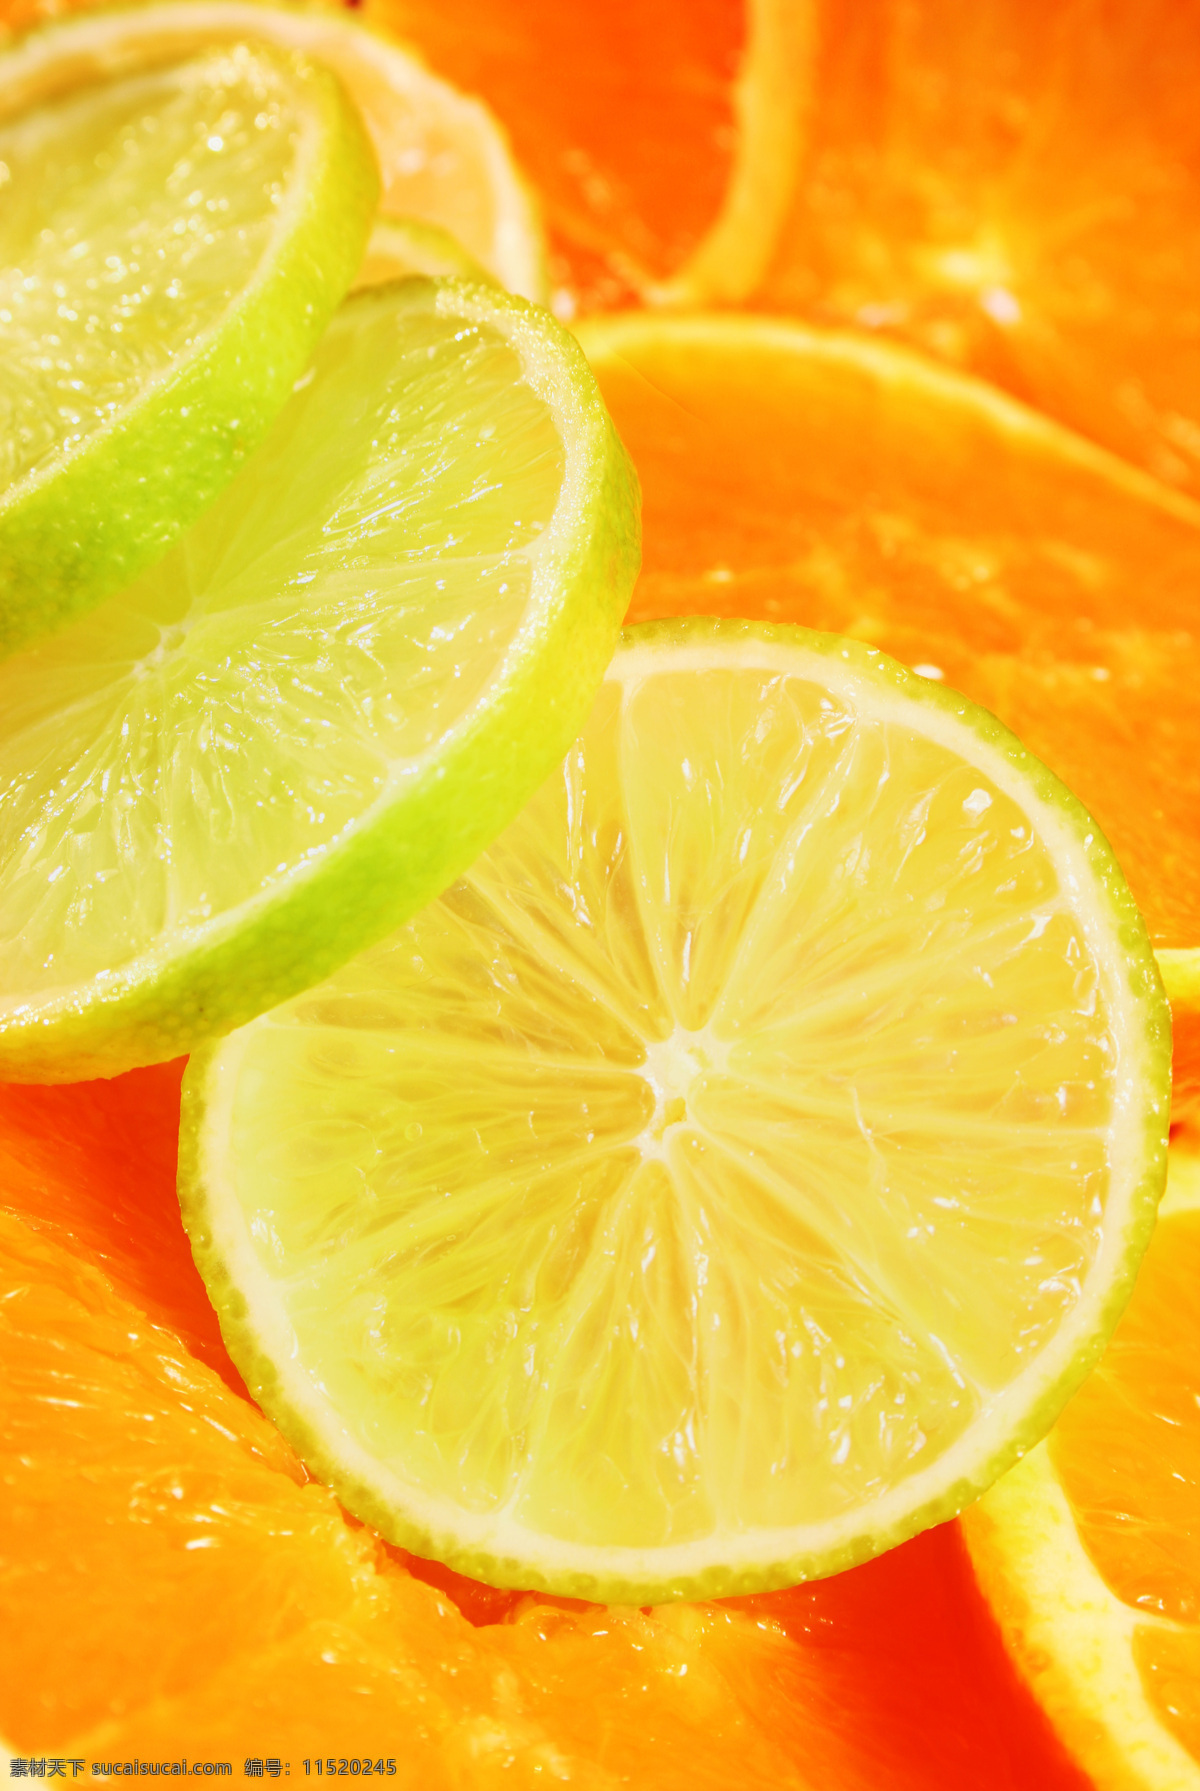 水果 新鲜水果 柠檬 橙子 柠檬片 水珠 水滴 背景图片 水果背景 底纹背景 果肉 果粒 水果蔬菜 餐饮美食 黄色